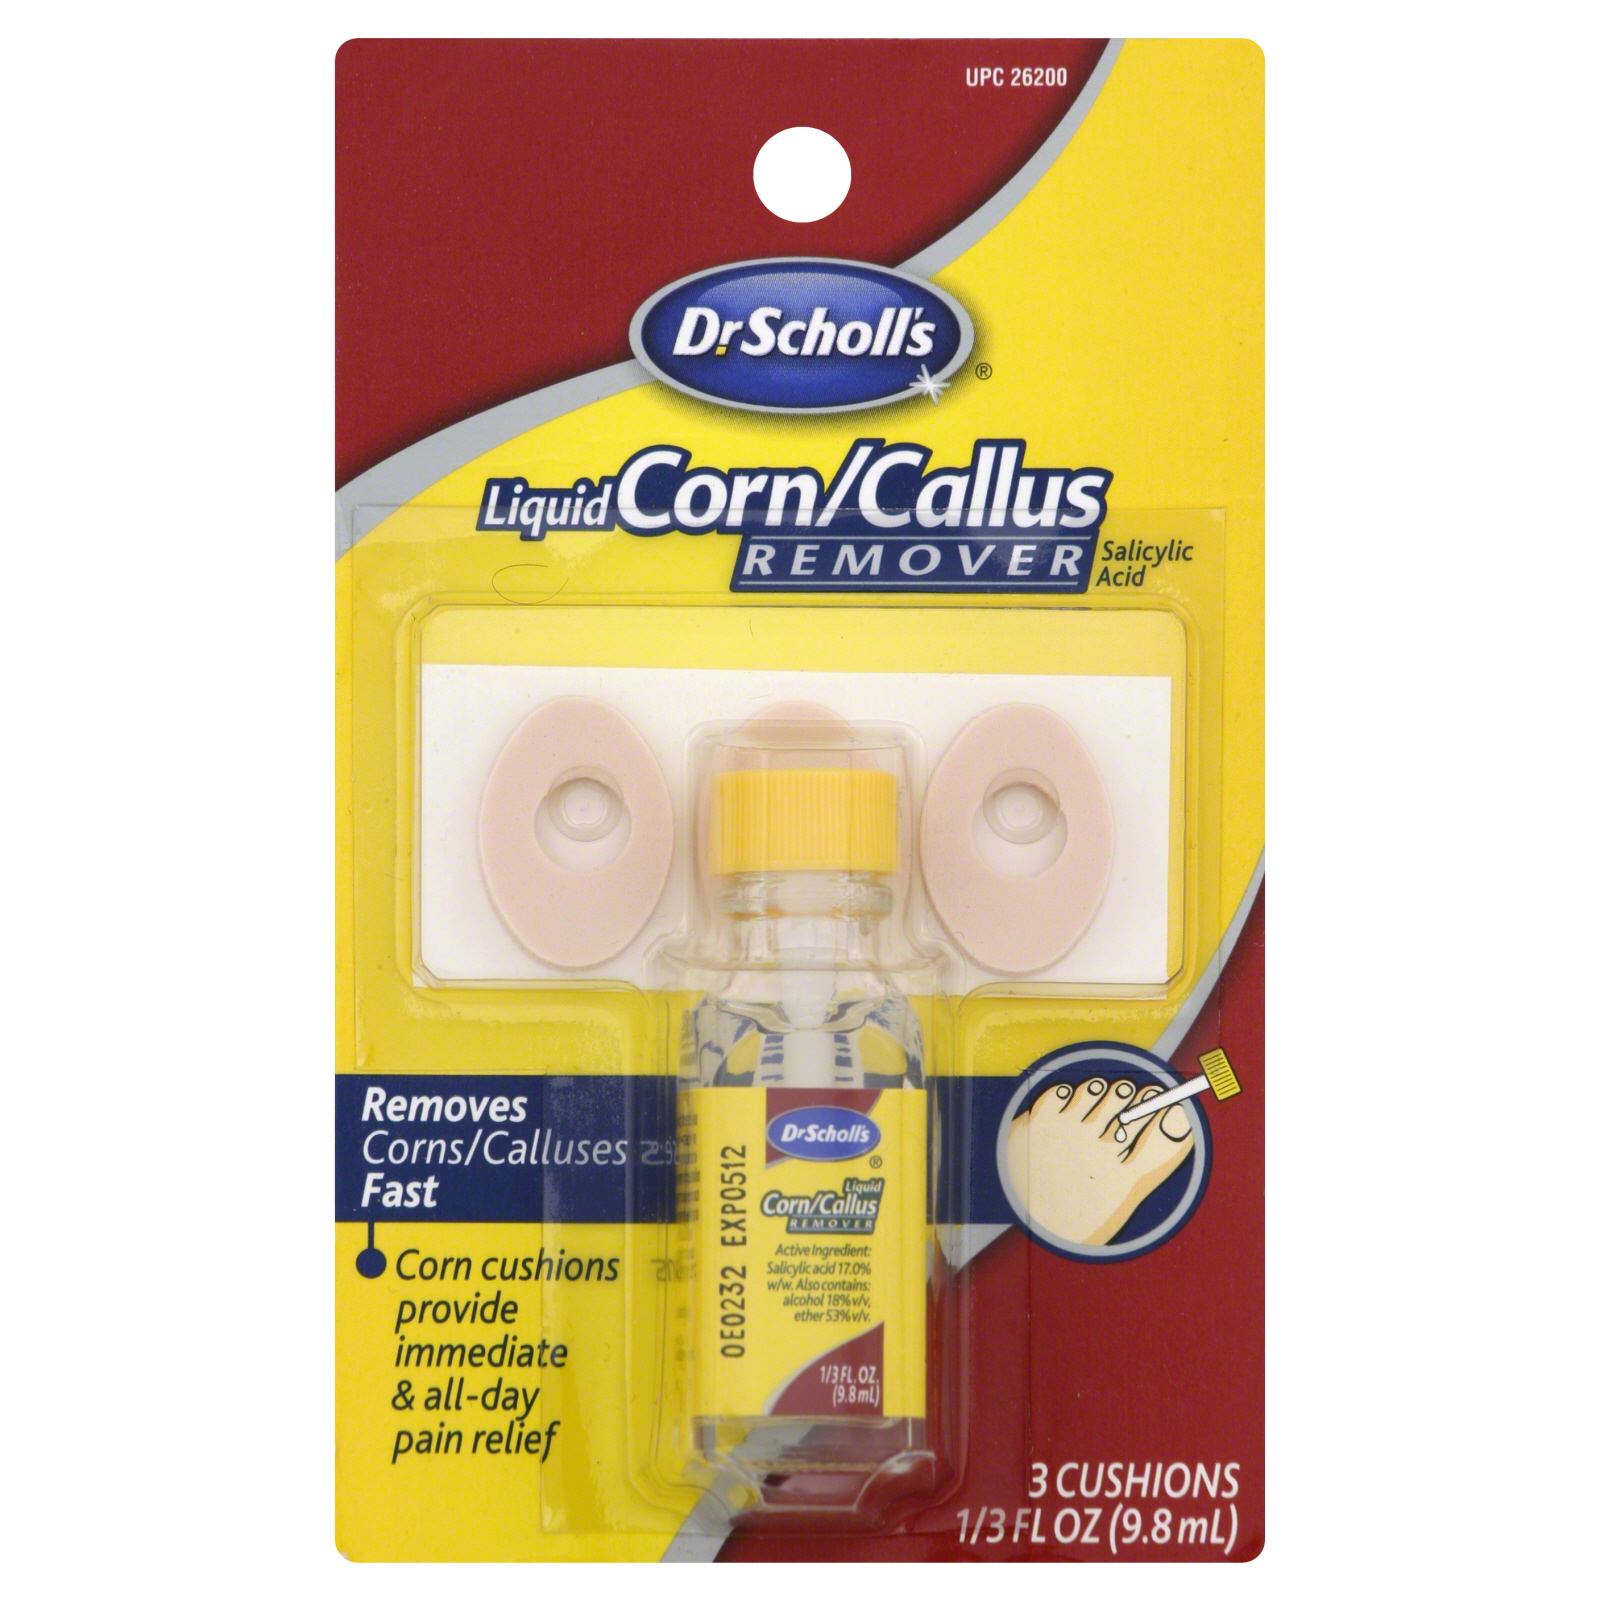 Corn/Callus Remover, Liquid, 1 set